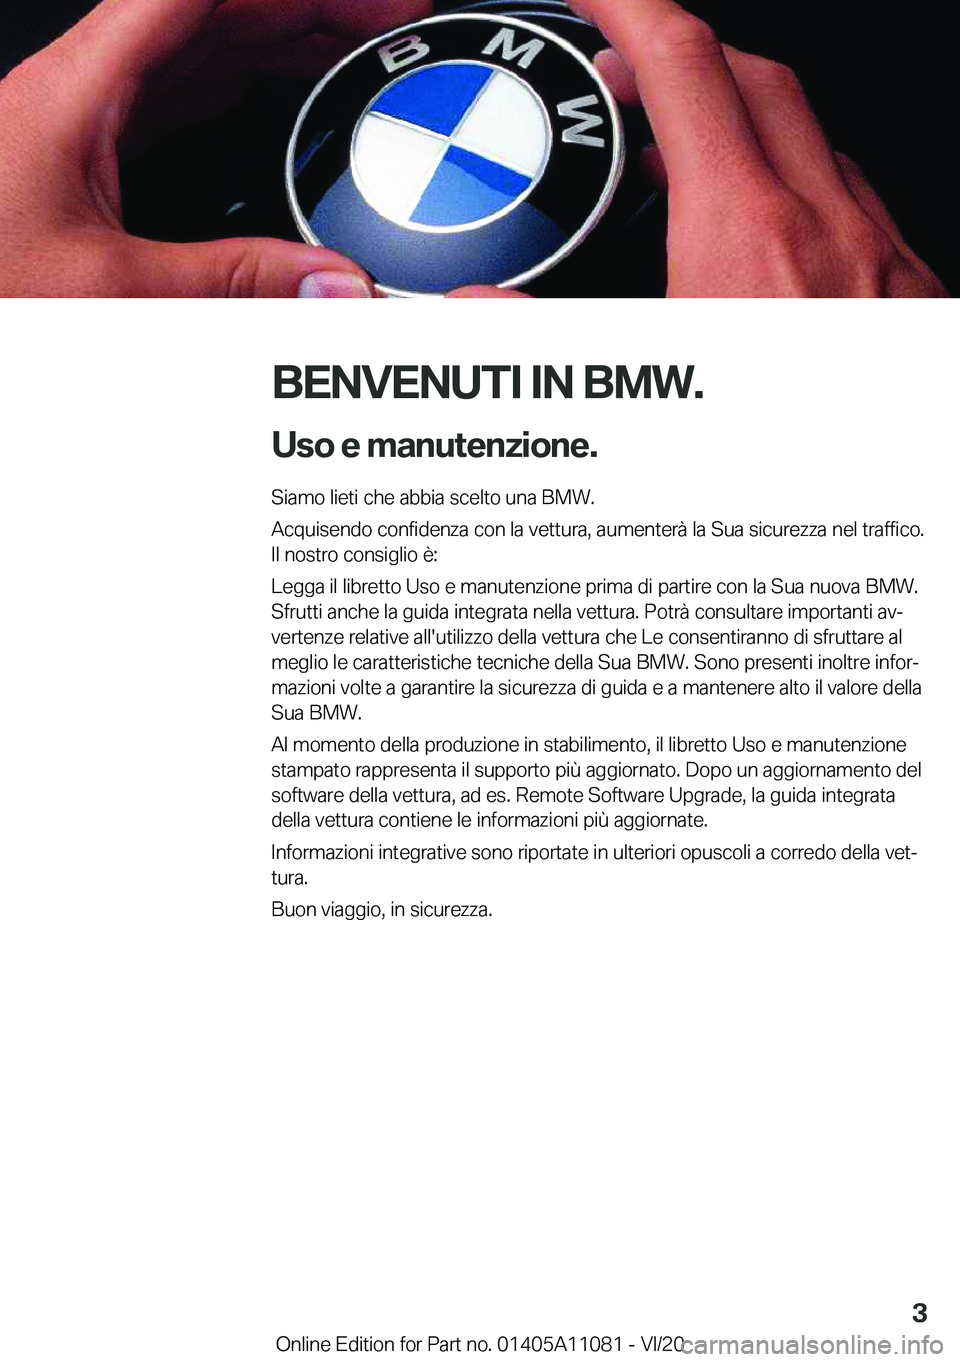 BMW 7 SERIES 2021  Libretti Di Uso E manutenzione (in Italian) �B�E�N�V�E�N�U�T�I��I�N��B�M�W�.�U�s�o��e��m�a�n�u�t�e�n�z�i�o�n�e�.
�S�i�a�m�o��l�i�e�t�i��c�h�e��a�b�b�i�a��s�c�e�l�t�o��u�n�a��B�M�W�.
�A�c�q�u�i�s�e�n�d�o��c�o�n�f�i�d�e�n�z�a��c�o�n�